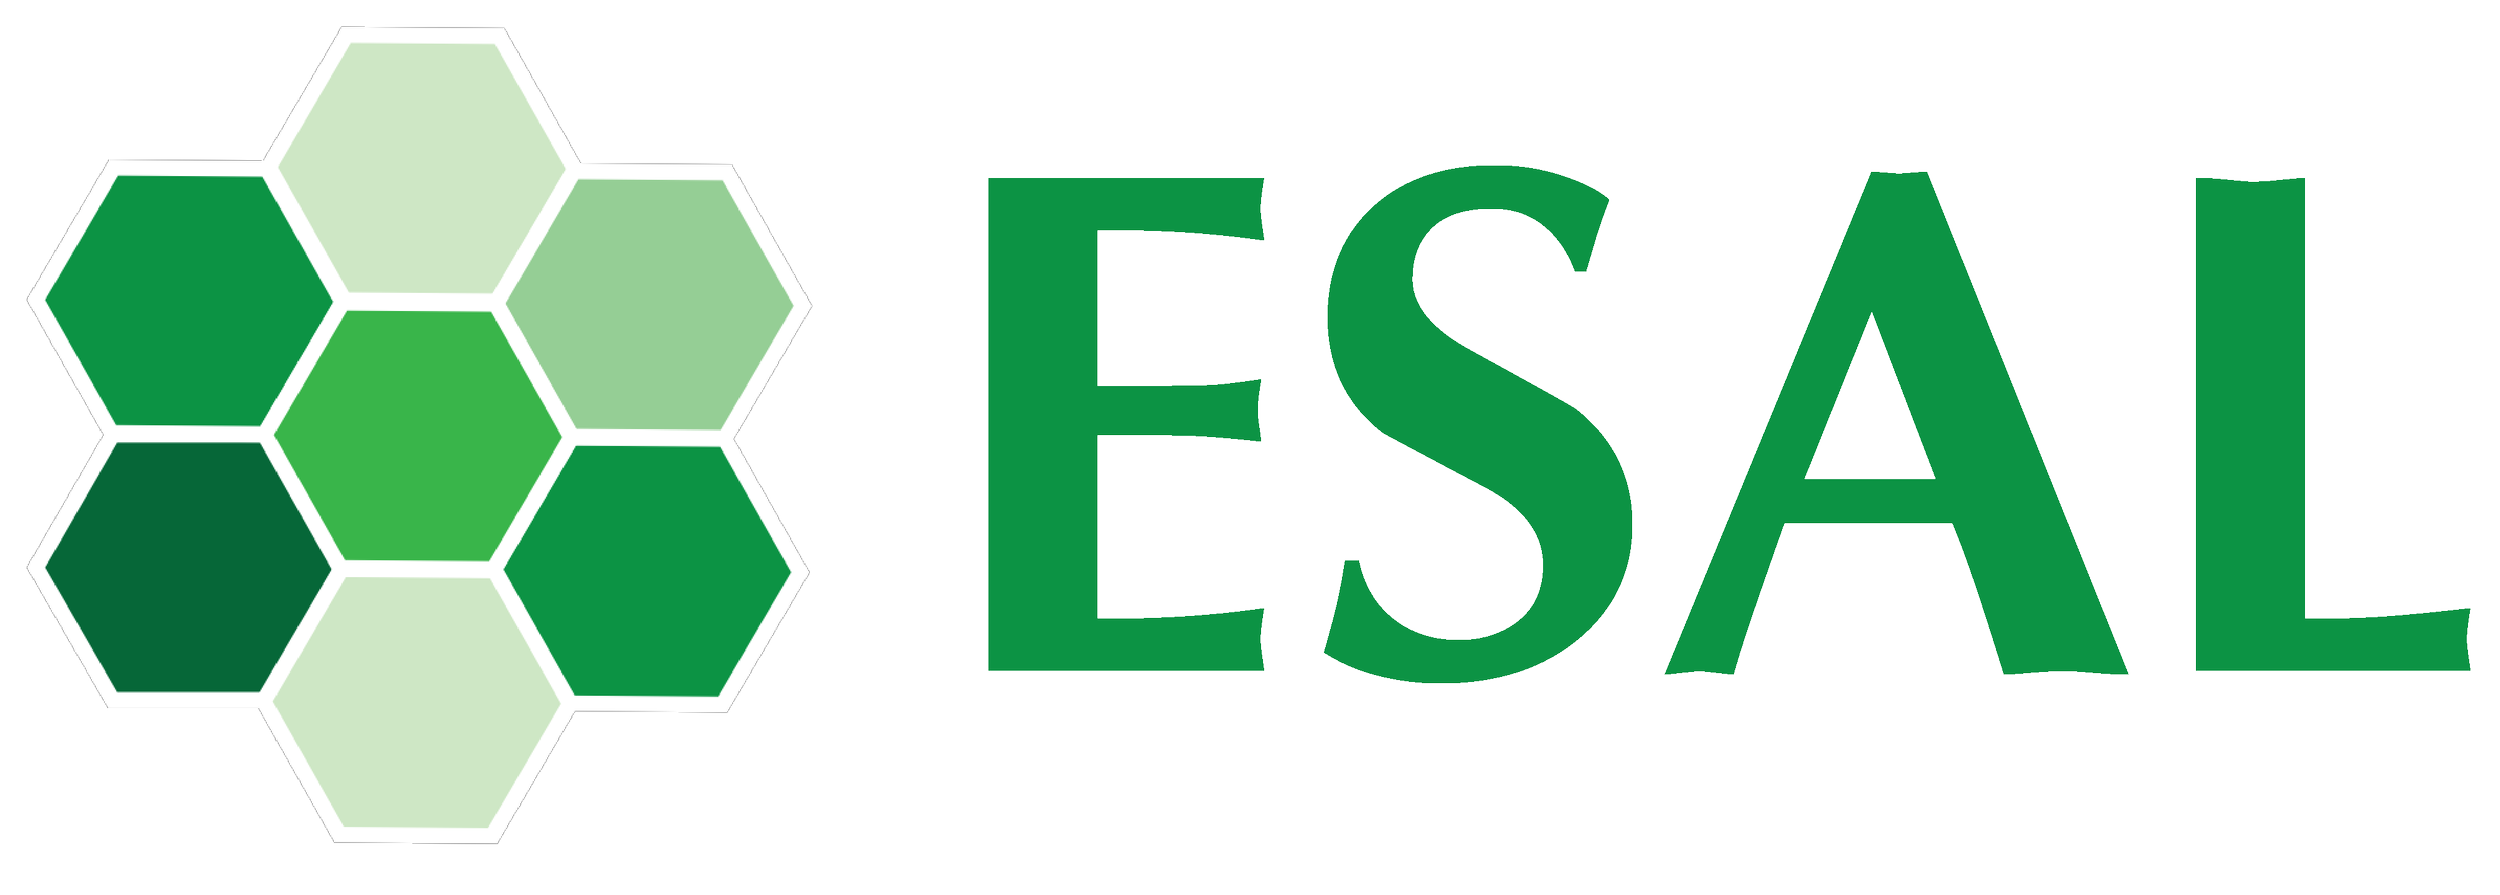 ESAL logo.png